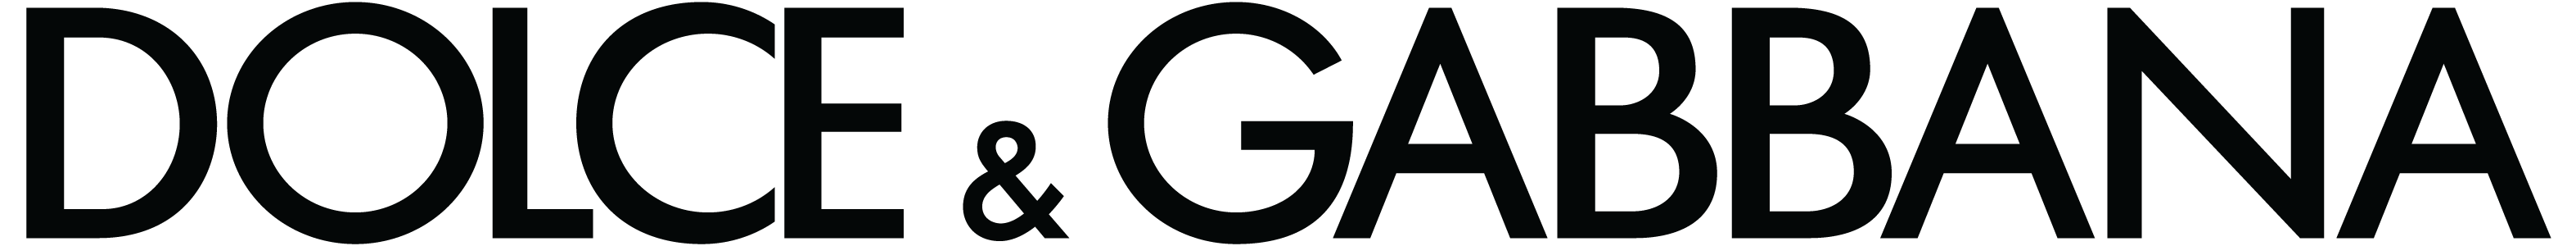 Dolce & Gabbana Logo - Dolce and gabbana Logos